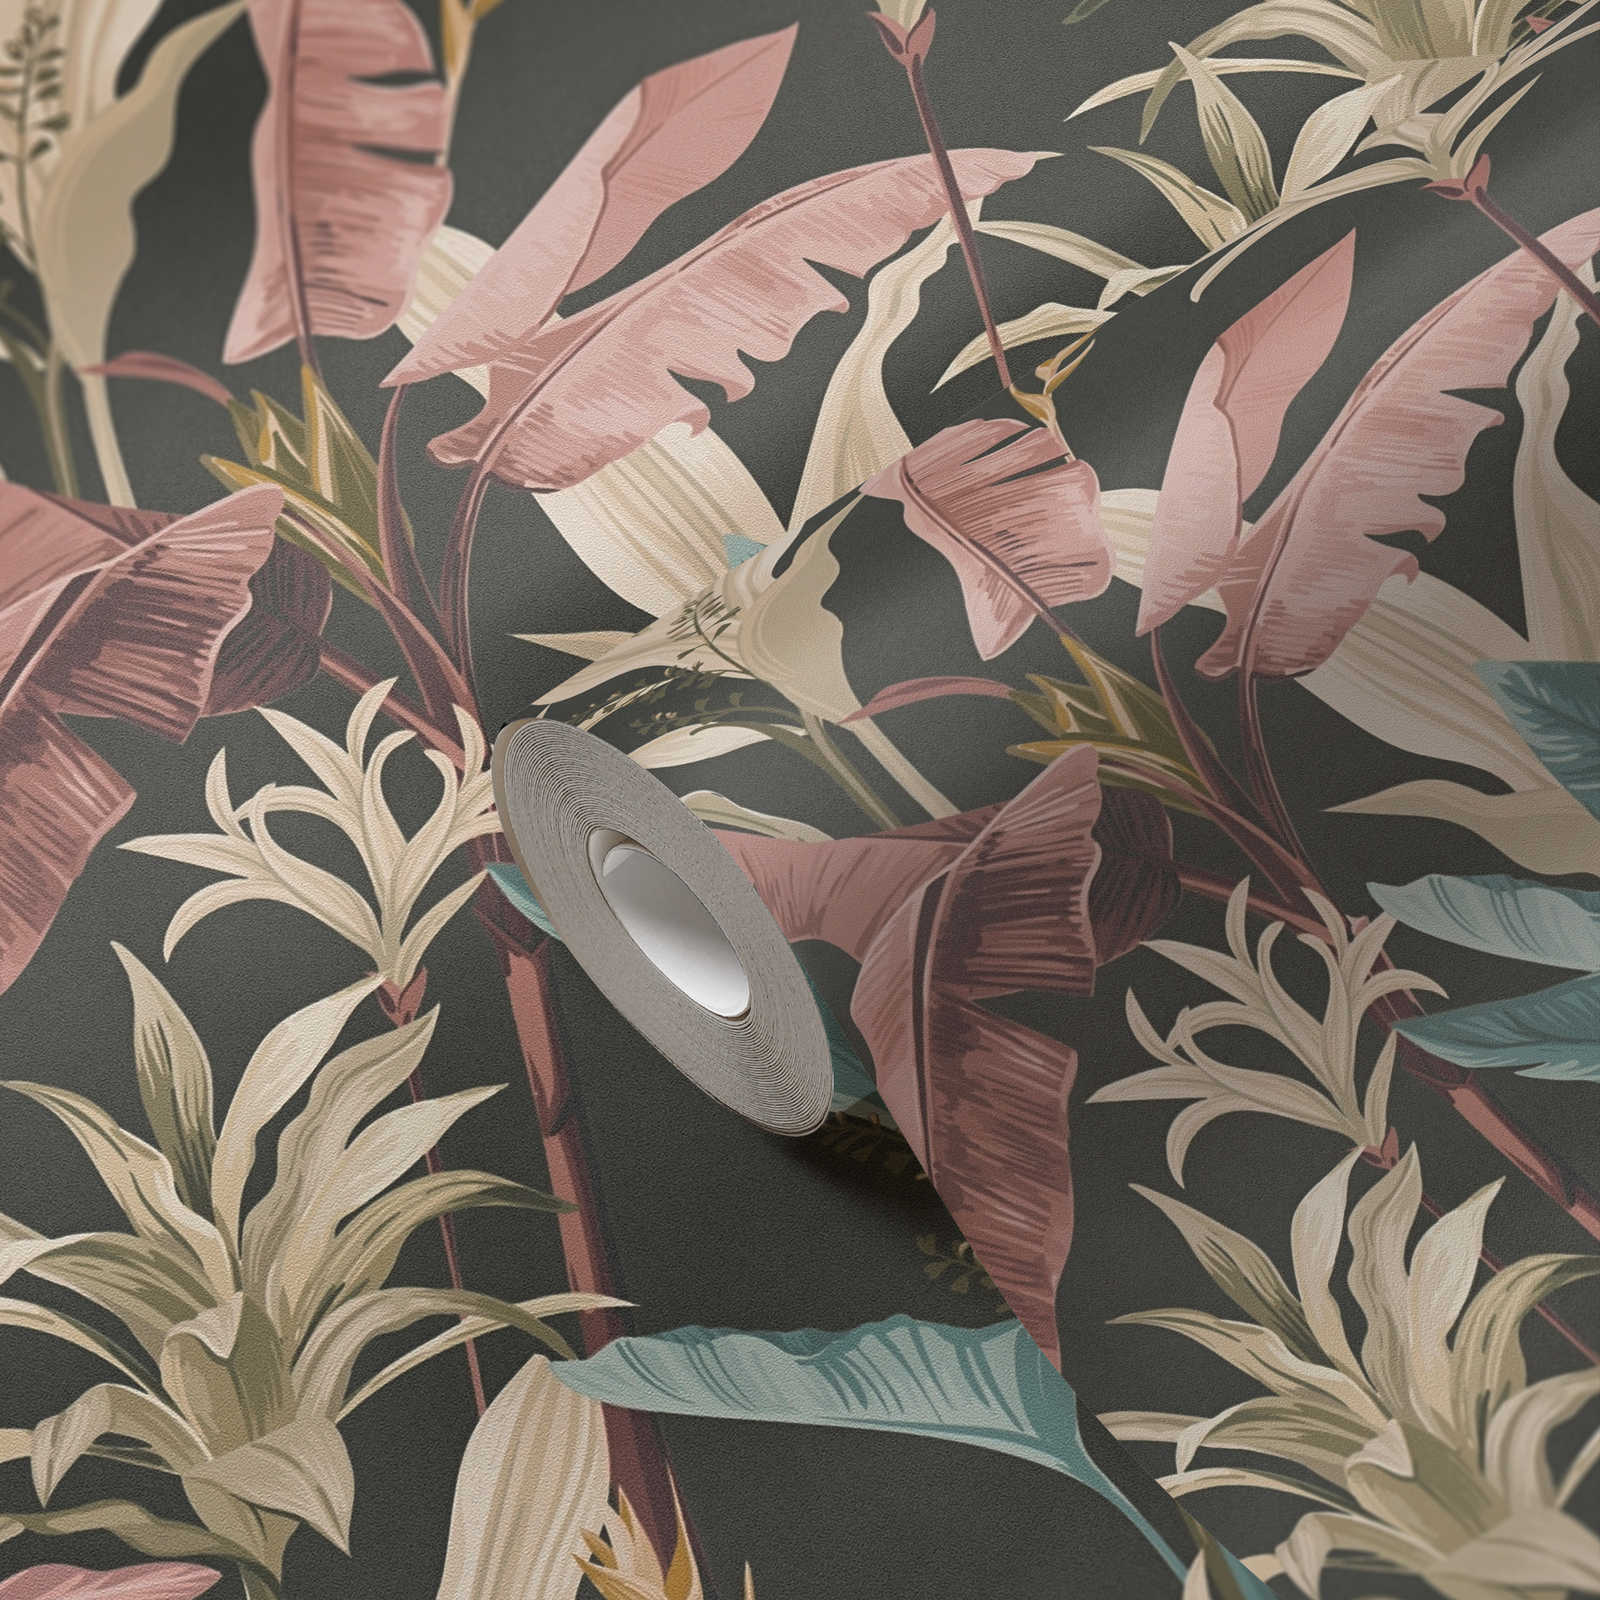             Papel pintado no tejido con un detallado diseño de hojas florales - azul, rosa, marrón
        